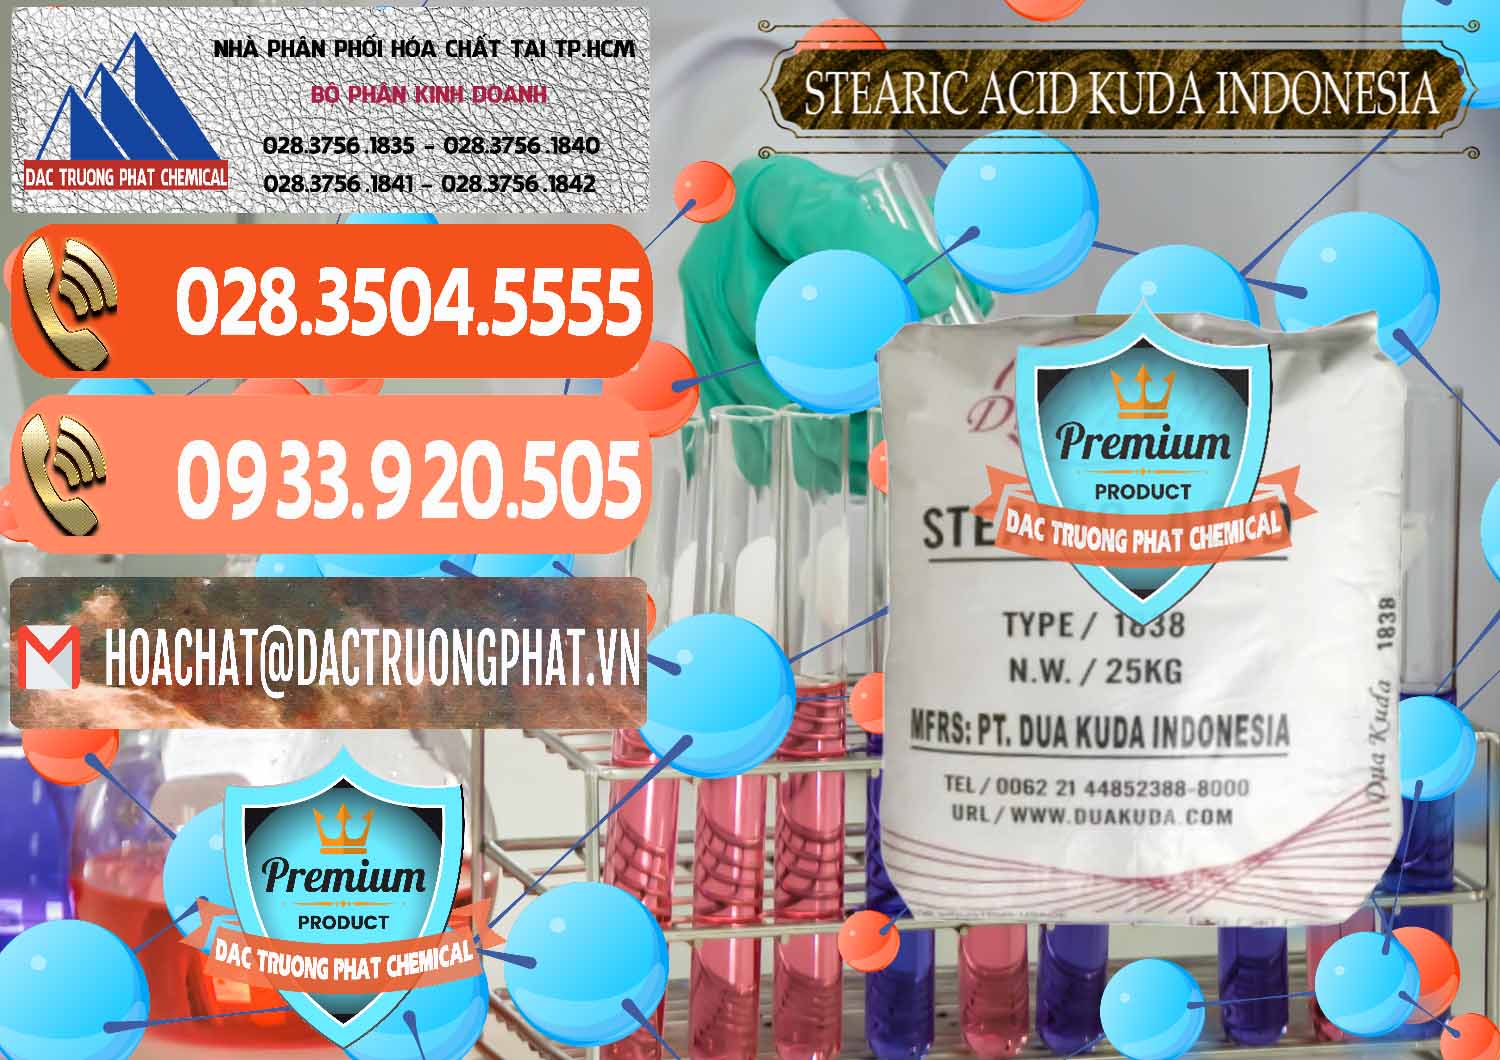 Đơn vị chuyên cung cấp & bán Axit Stearic - Stearic Acid Dua Kuda Indonesia - 0388 - Cty nhập khẩu ( cung cấp ) hóa chất tại TP.HCM - hoachatmientay.com